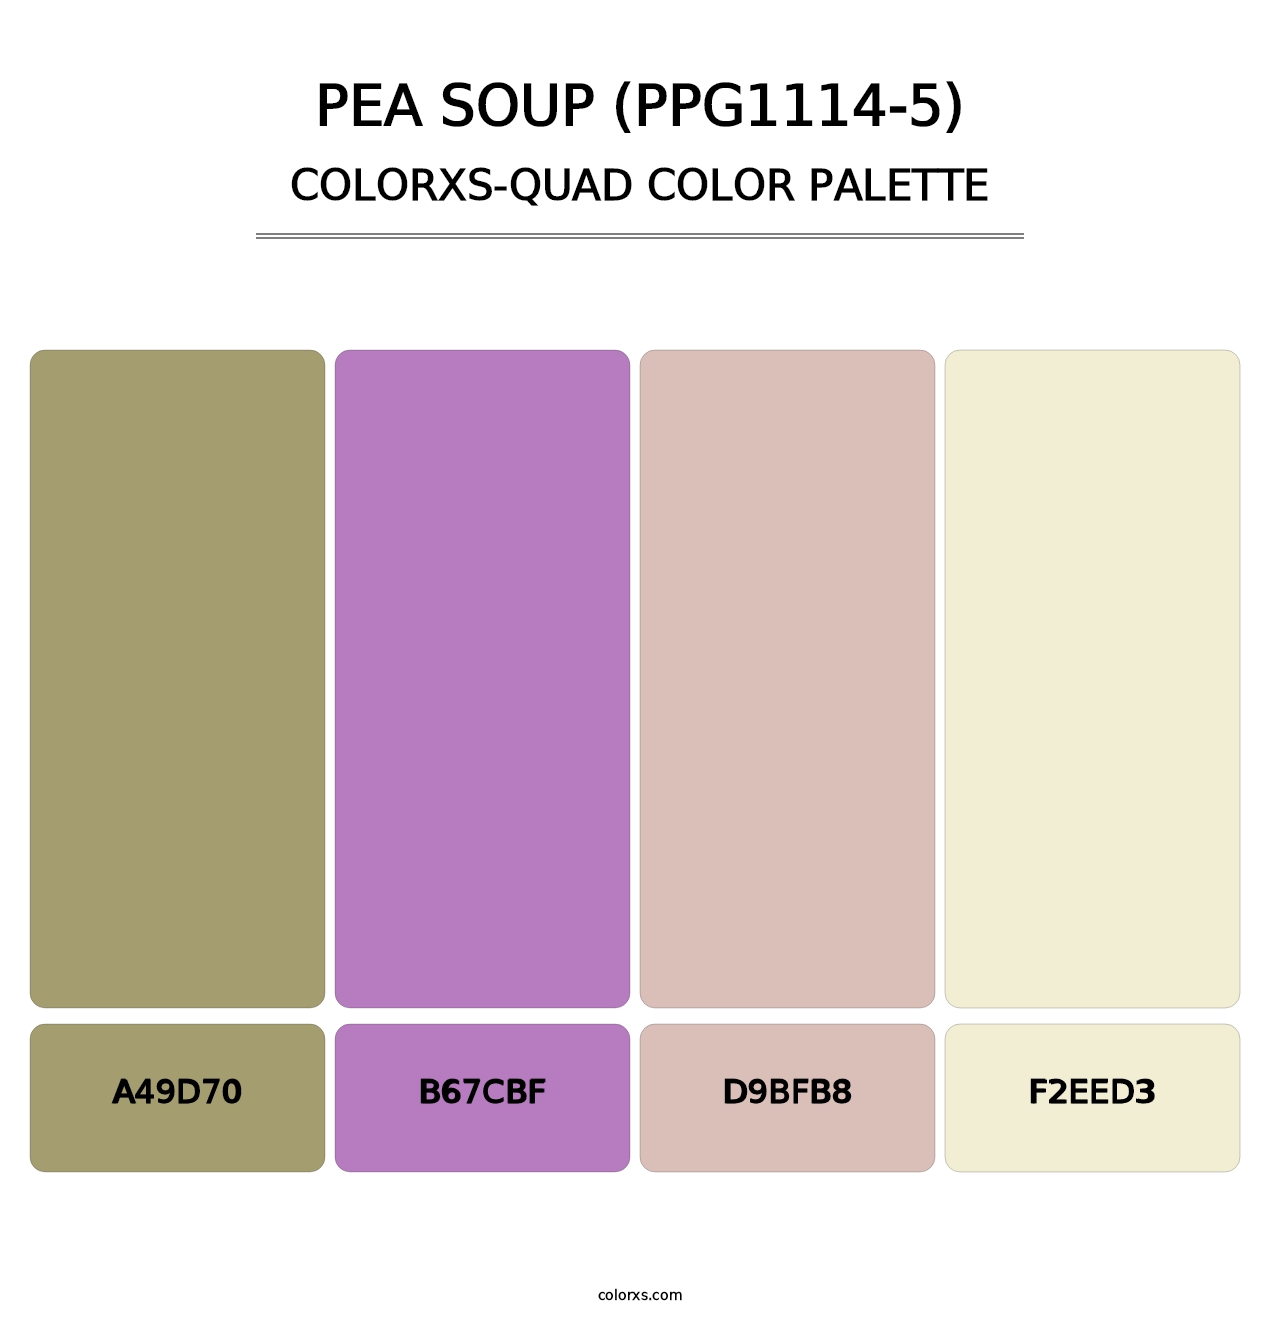 Pea Soup (PPG1114-5) - Colorxs Quad Palette